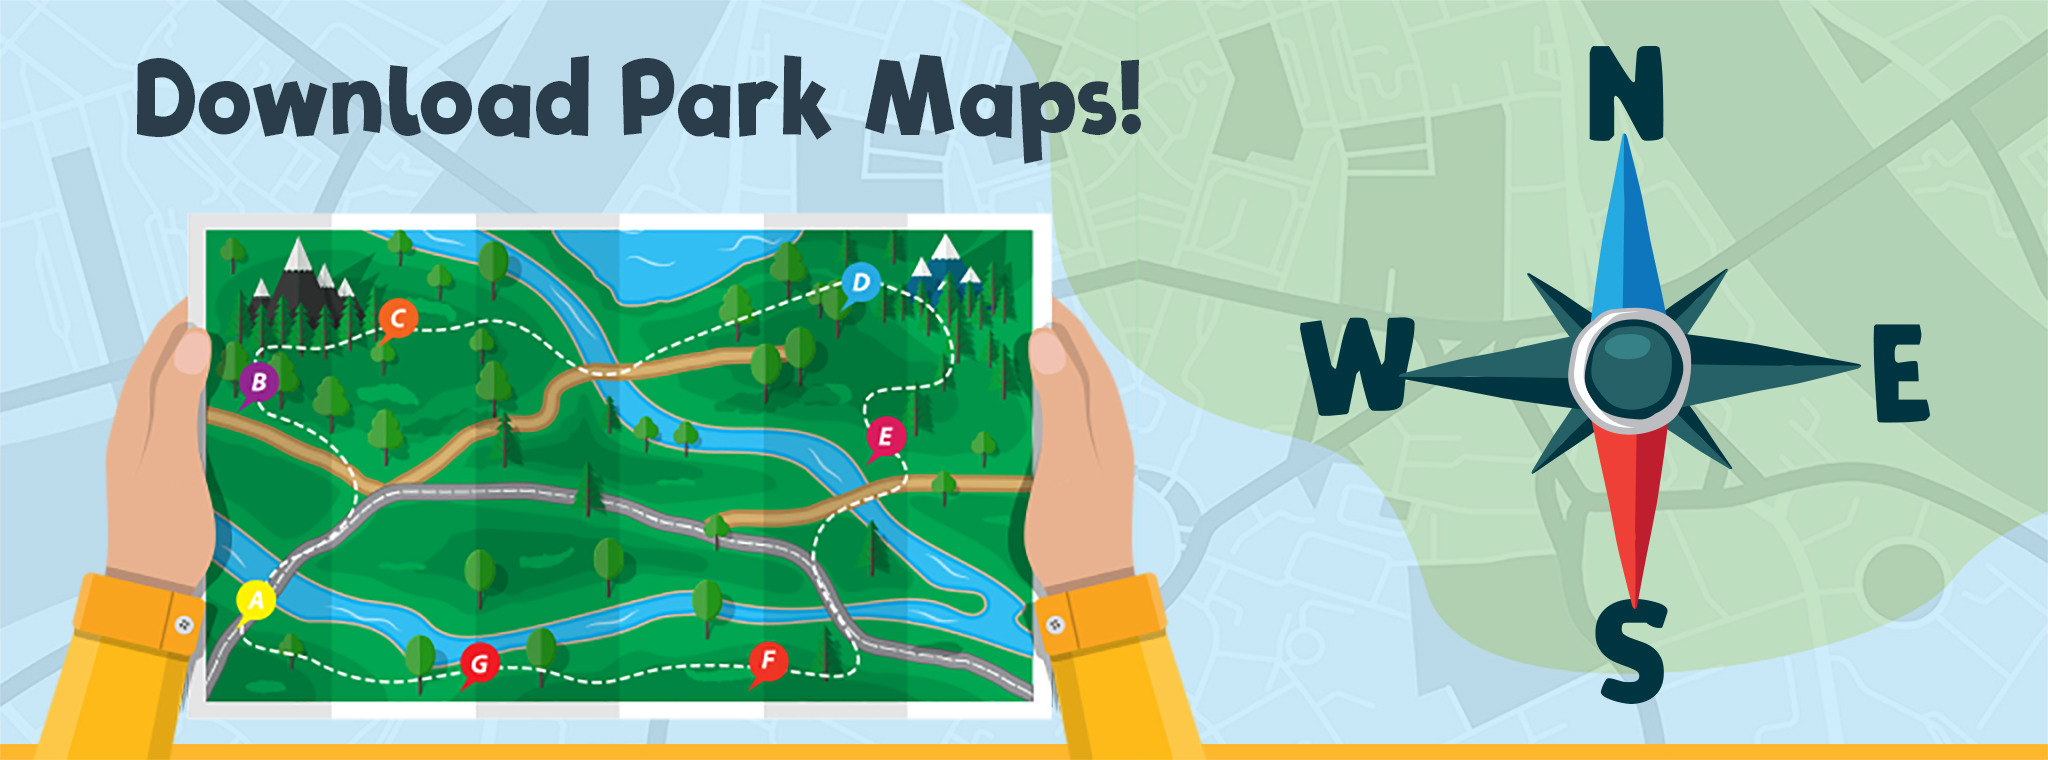 Download Park Maps!